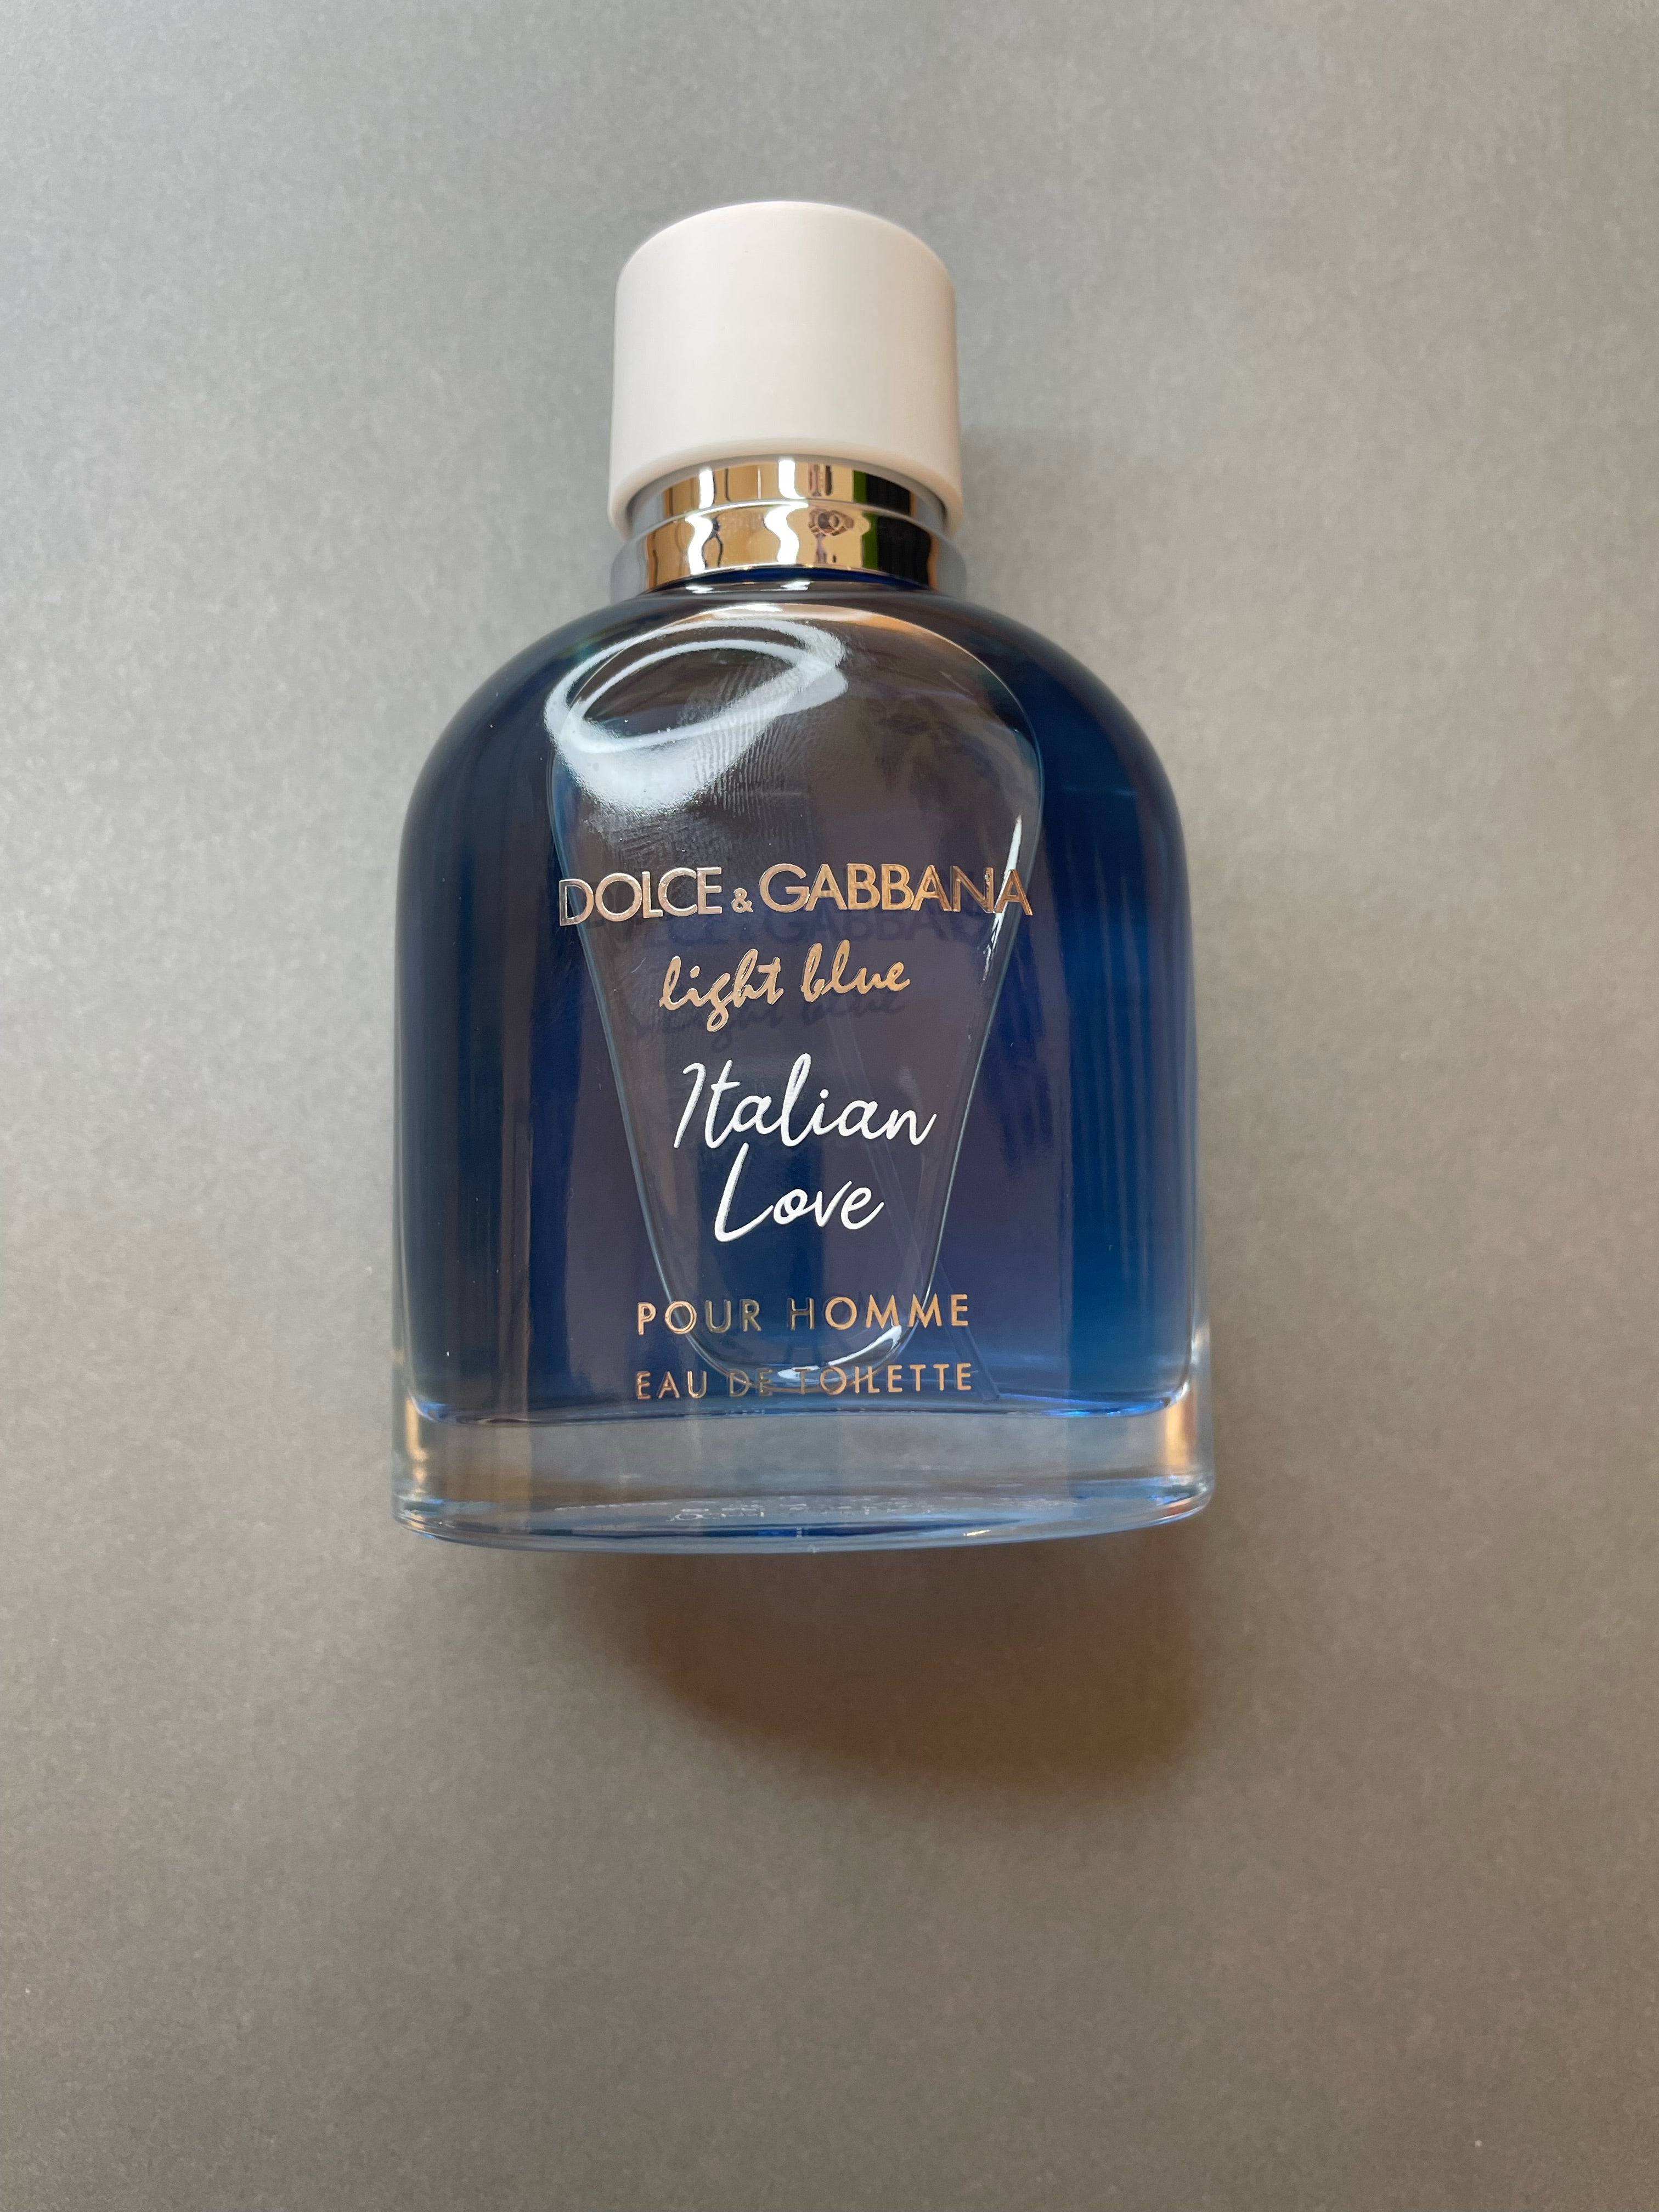 Dolce & Gabbana Light Blue Pour Homme Italian Love – Fragrance Samples UK